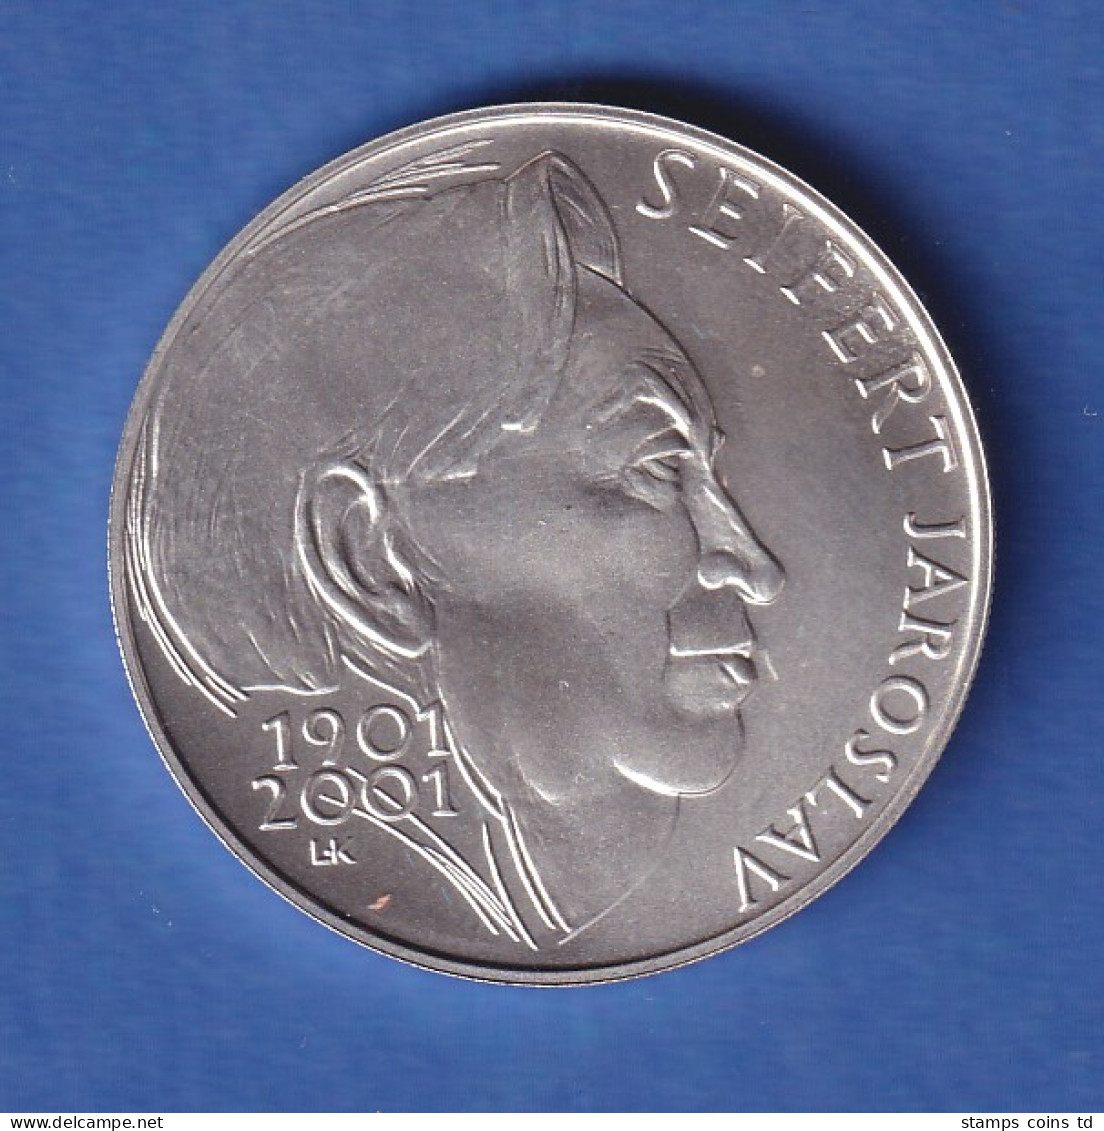 Tschechien 2001 Silbermünze 200 Kronen 100. Geburtstag Von Jaroslav Seifert Stg - República Checa